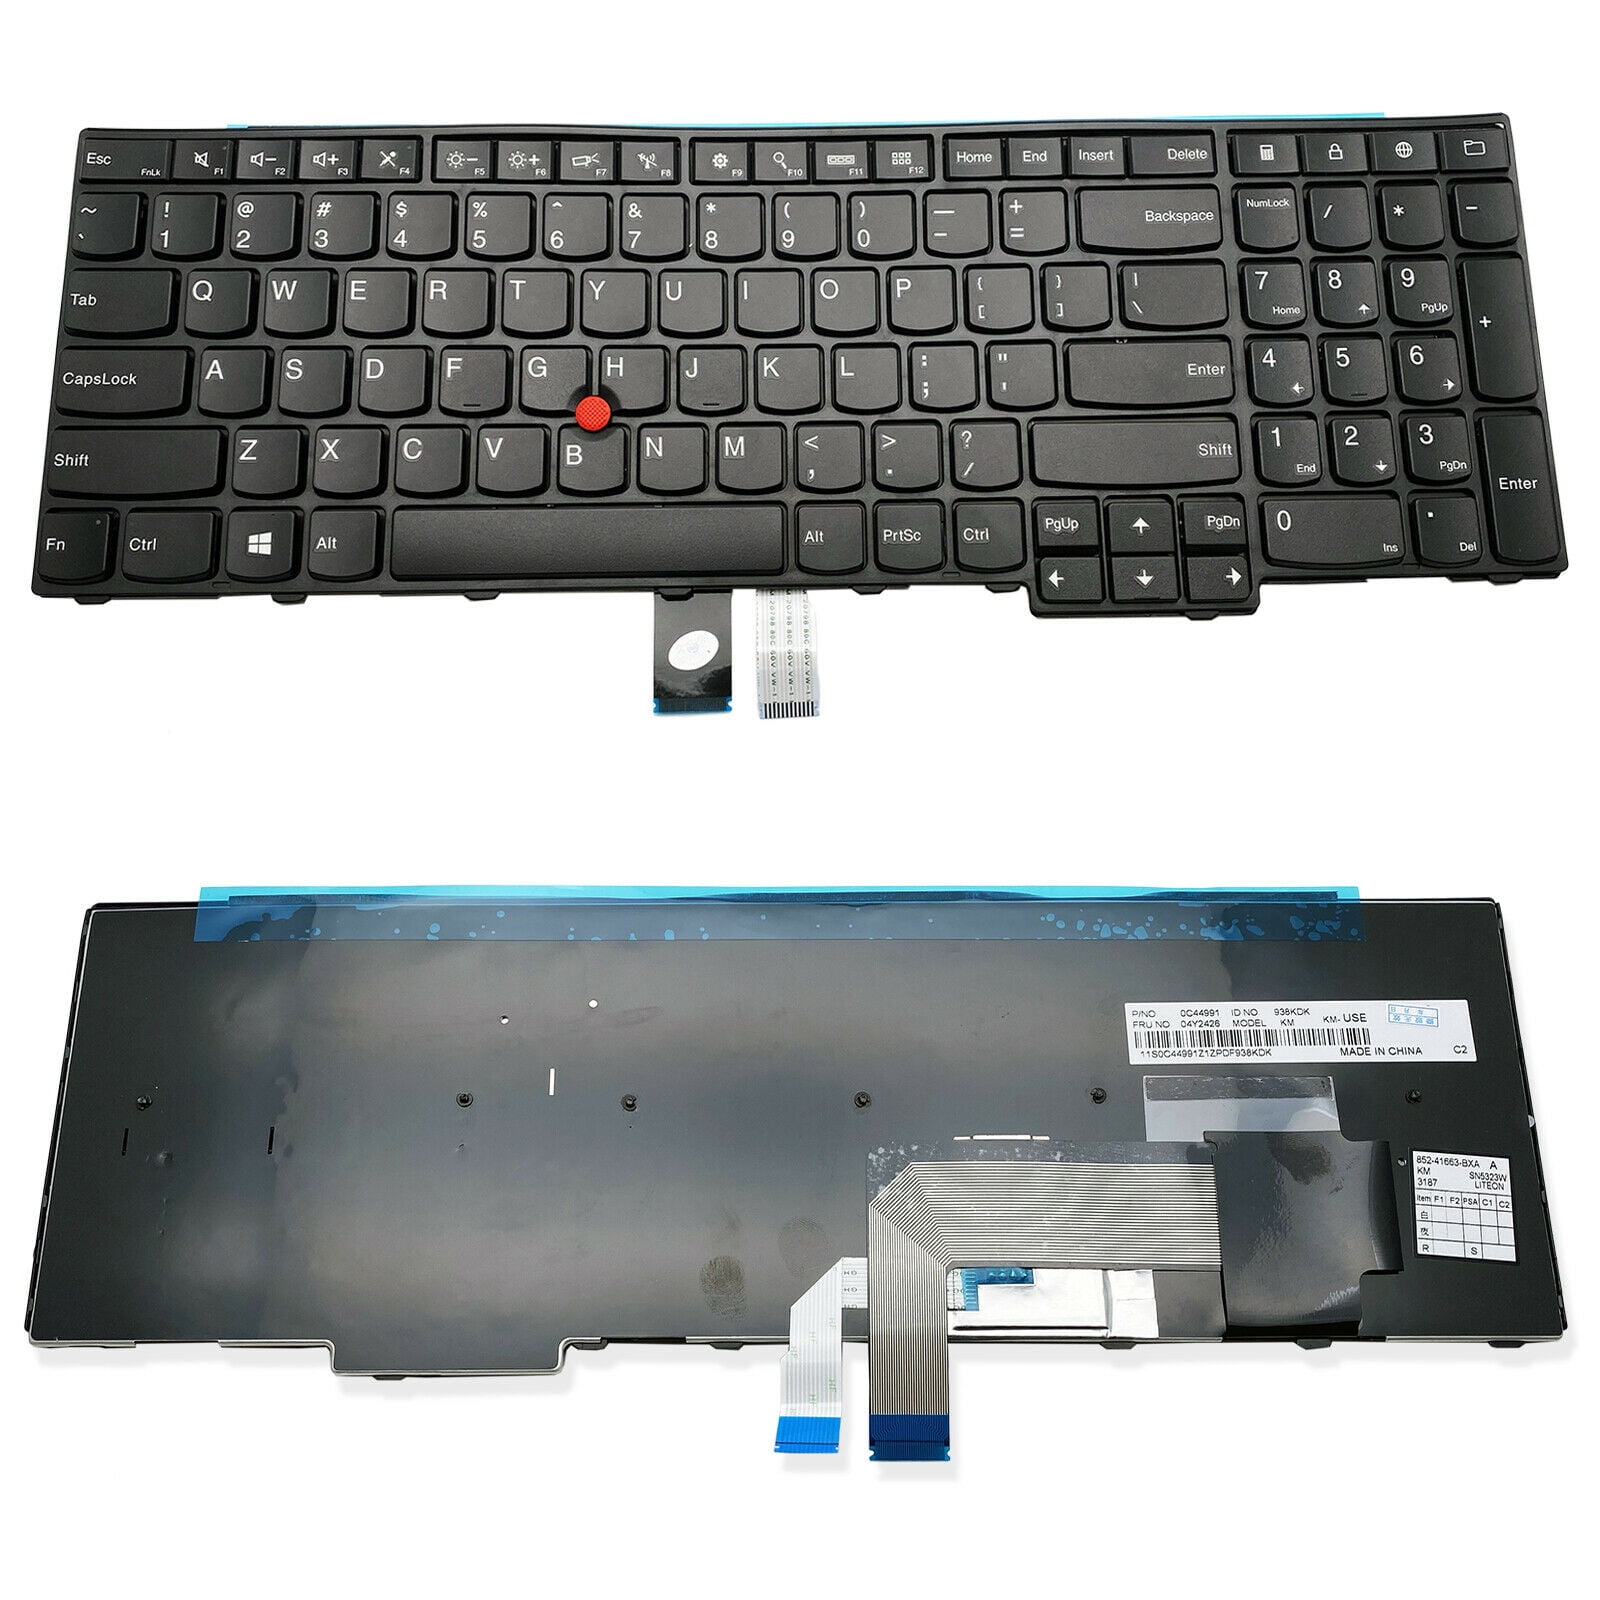 Keyboard for Lenovo Thinkpad W540 W541 W550 W550s - US 0C44952 04Y2652  04Y2348 